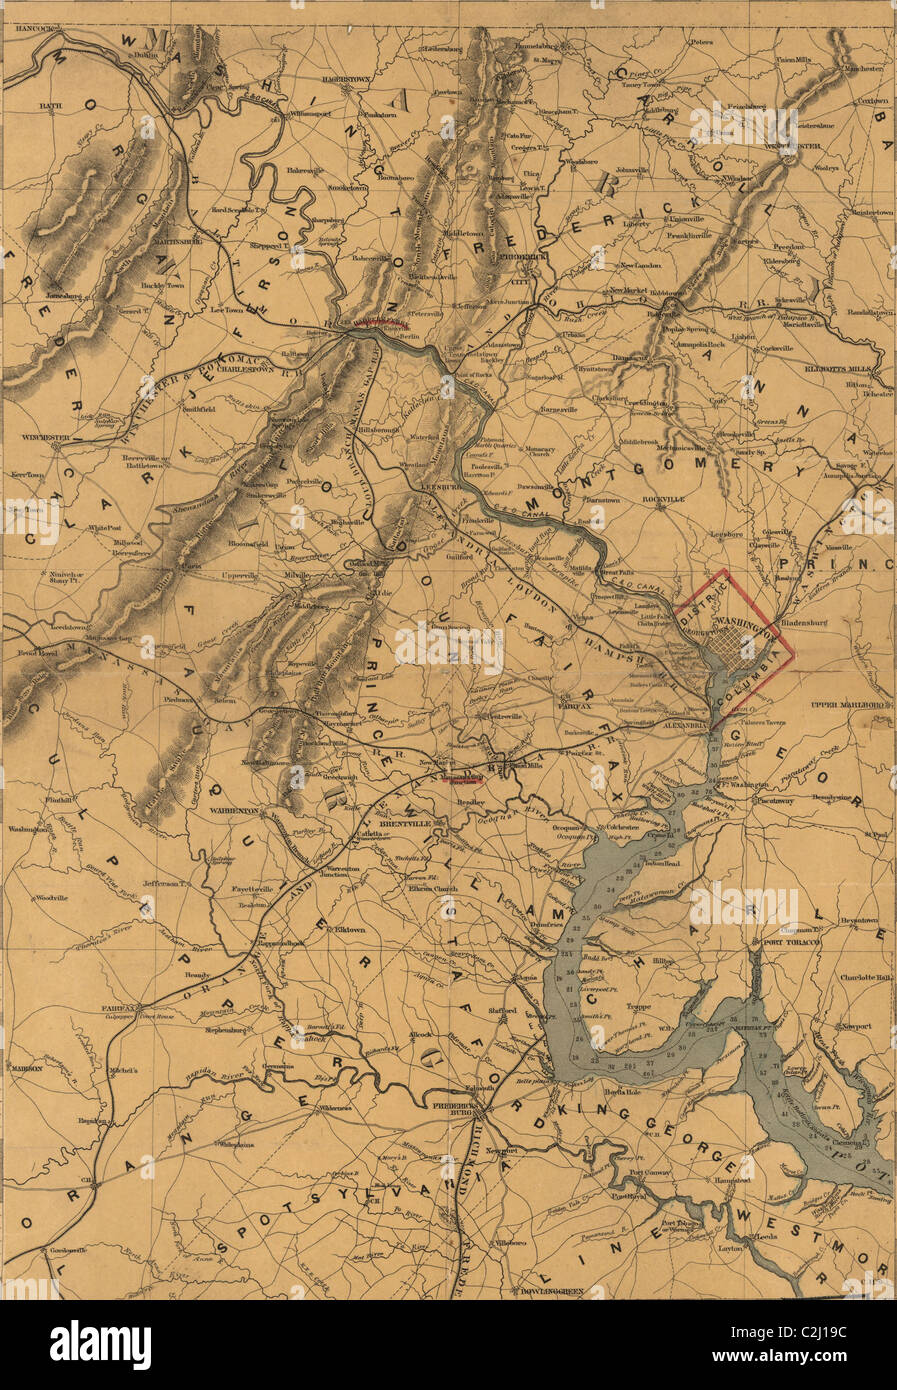 Washington und der Sitz des Krieges am Potomac. Stockfoto